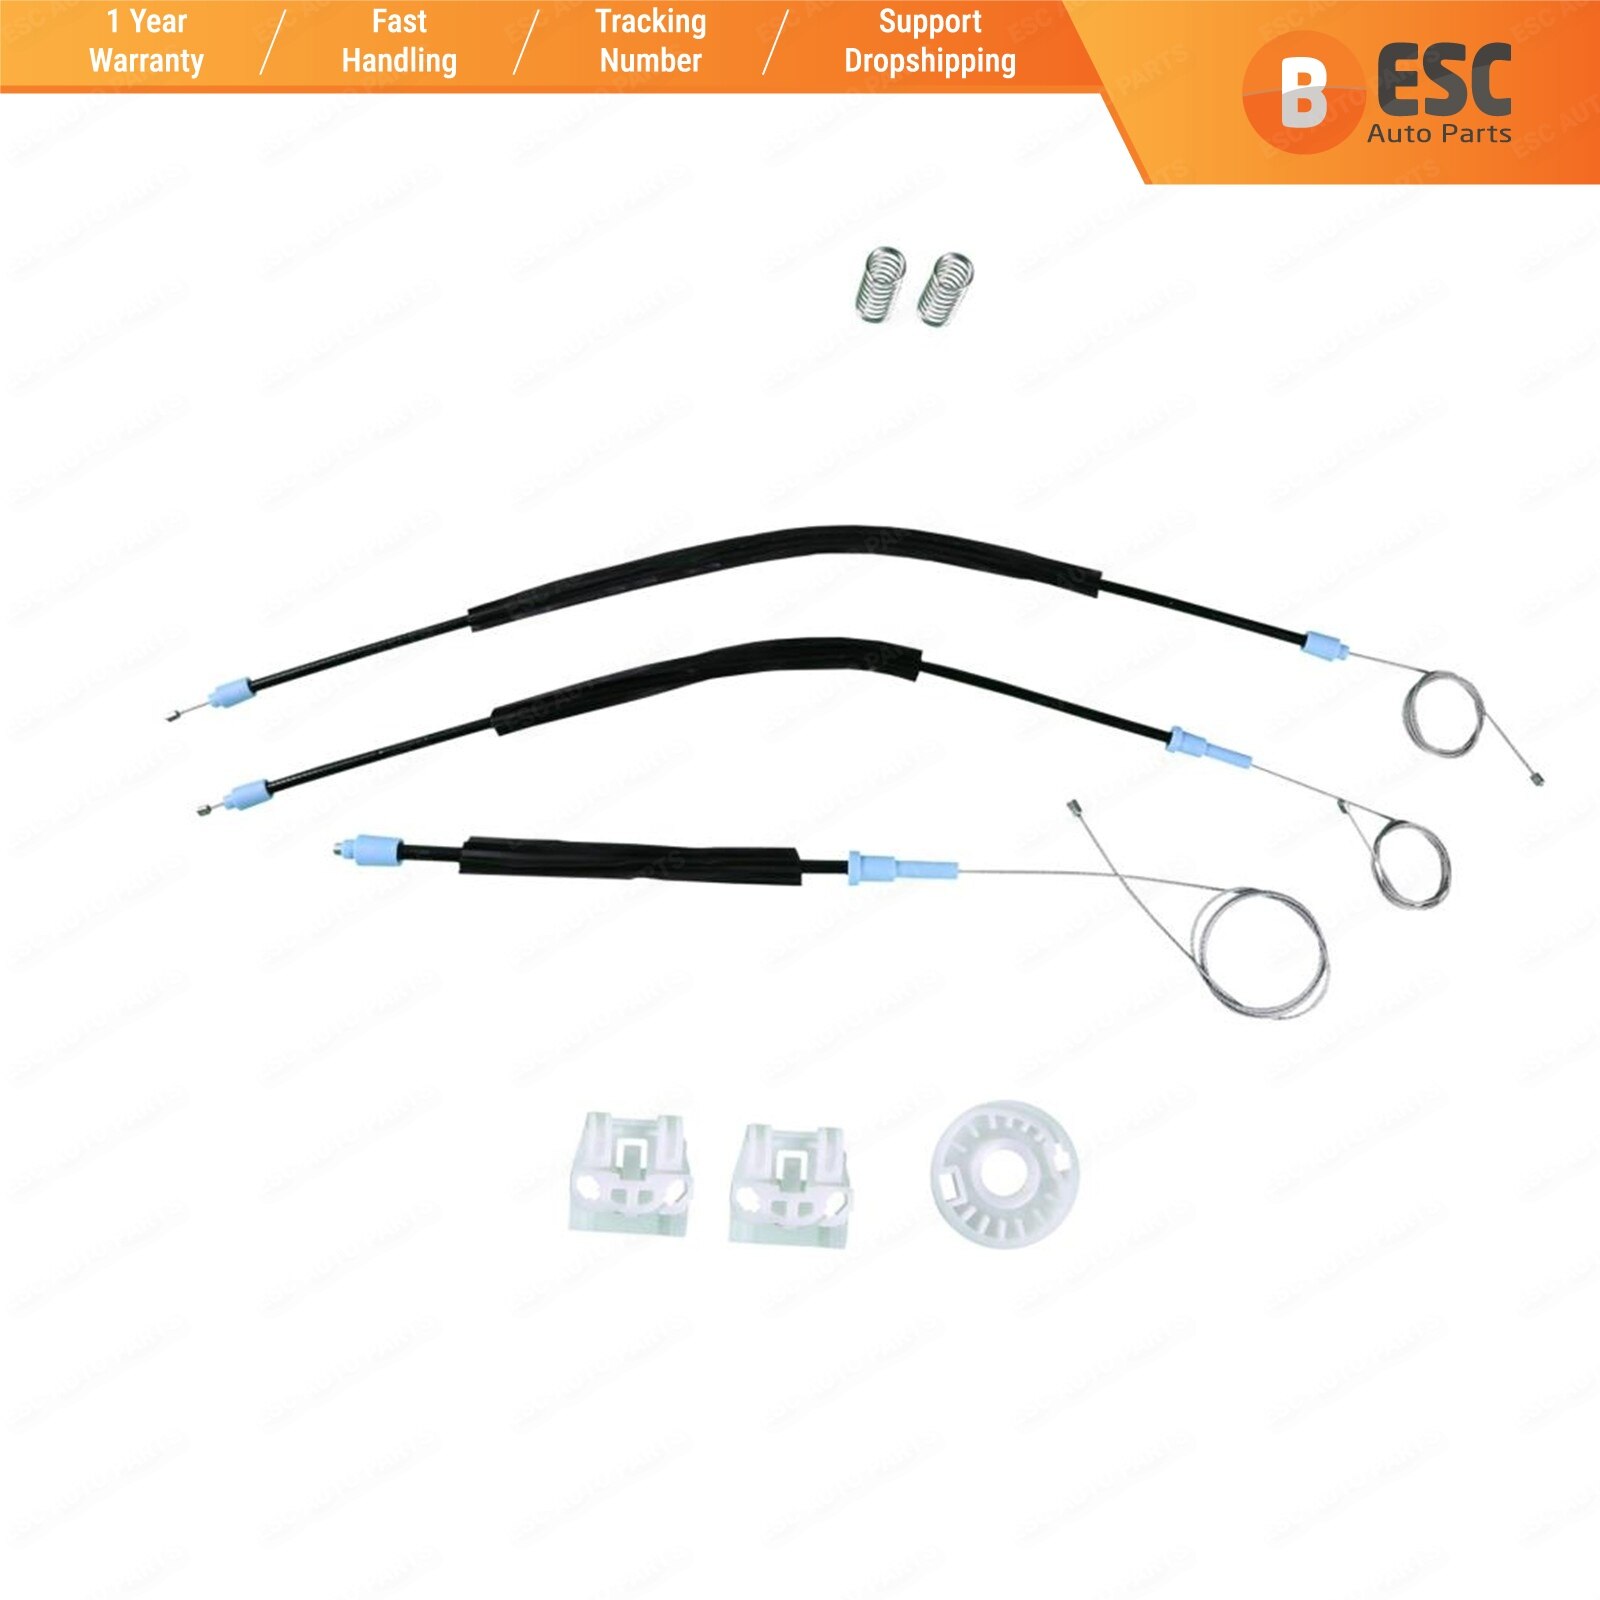 Esc EWR524 Venster Regulator Reparatie Kit Linker Of Rechter Deur Voor Vw Golf MK4 Coupe 2/3 Deur